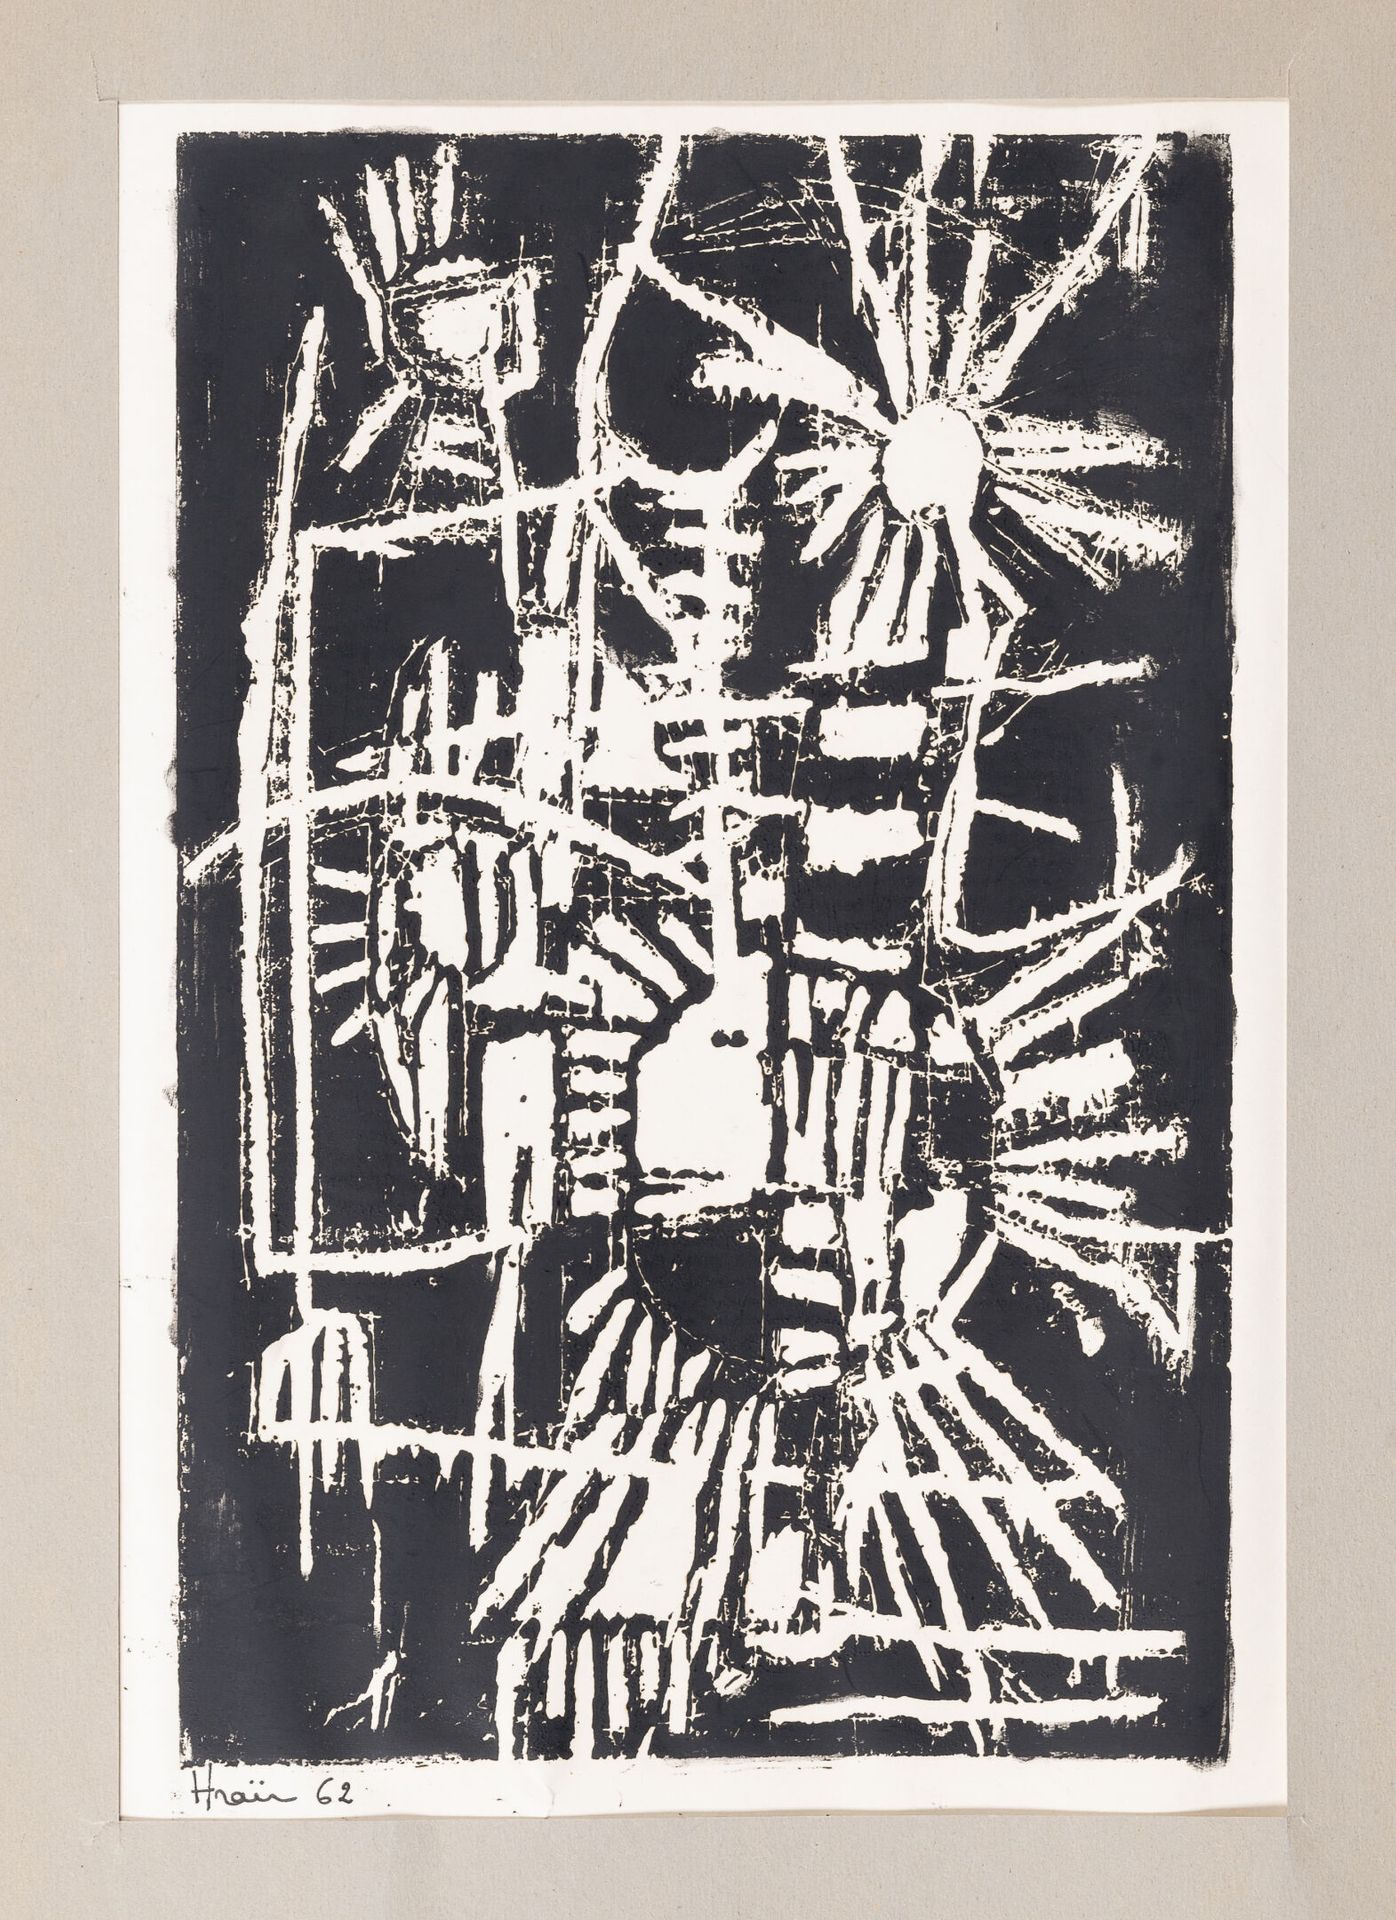 MELMY (XXème siècle) 无题》，1962年。

纸上木炭和彩色铅笔。

右下方有签名和日期。

39.5 x 32 厘米。

附上。

头发（&hellip;